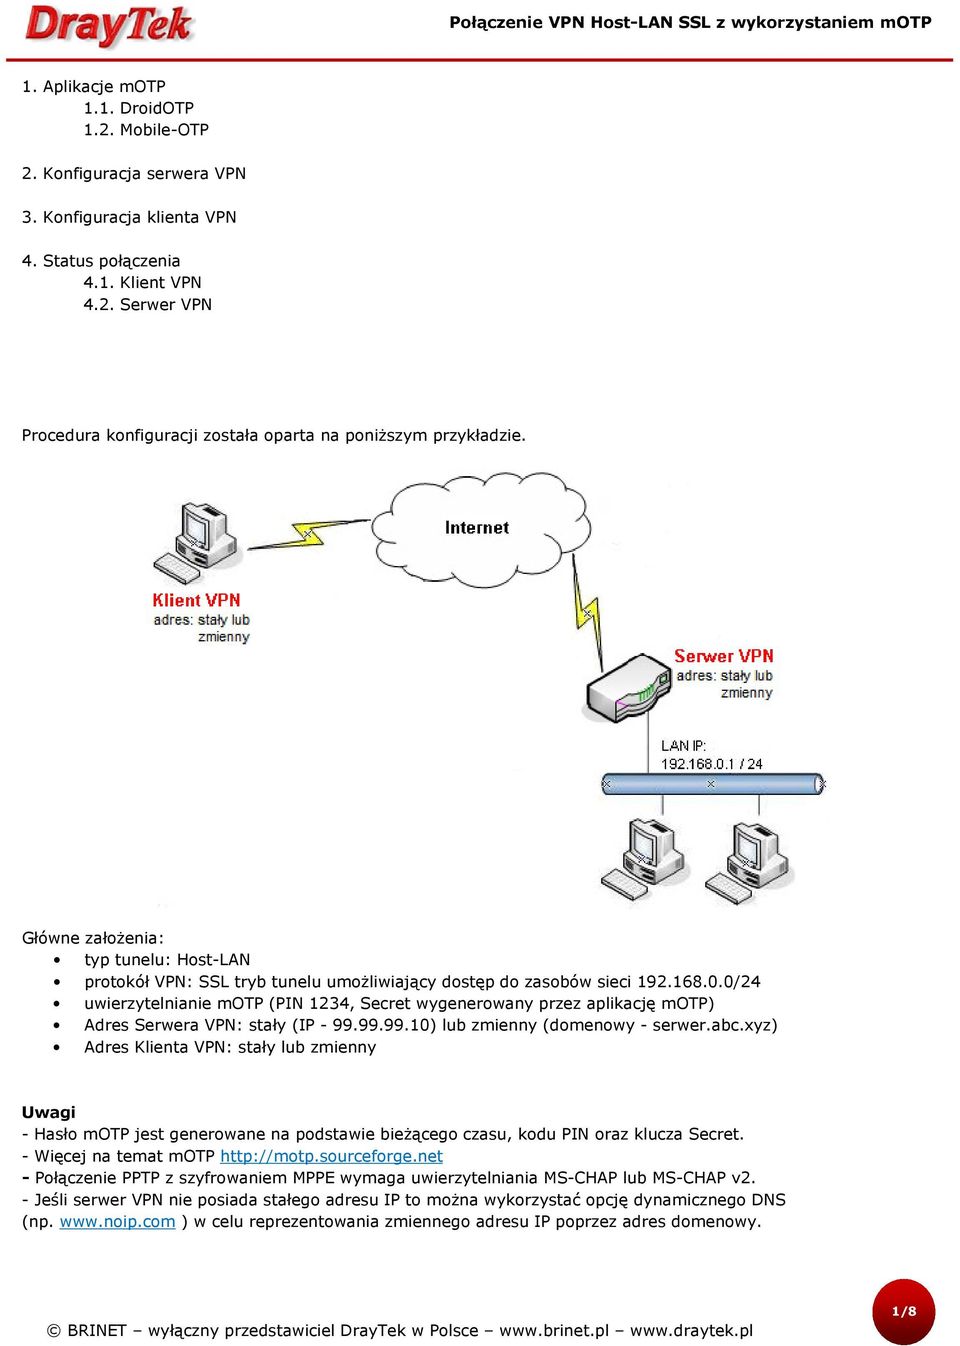 0/24 uwierzytelnianie motp (PIN 1234, Secret wygenerowany przez aplikację motp) Adres Serwera VPN: stały (IP - 99.99.99.10) lub zmienny (domenowy - serwer.abc.